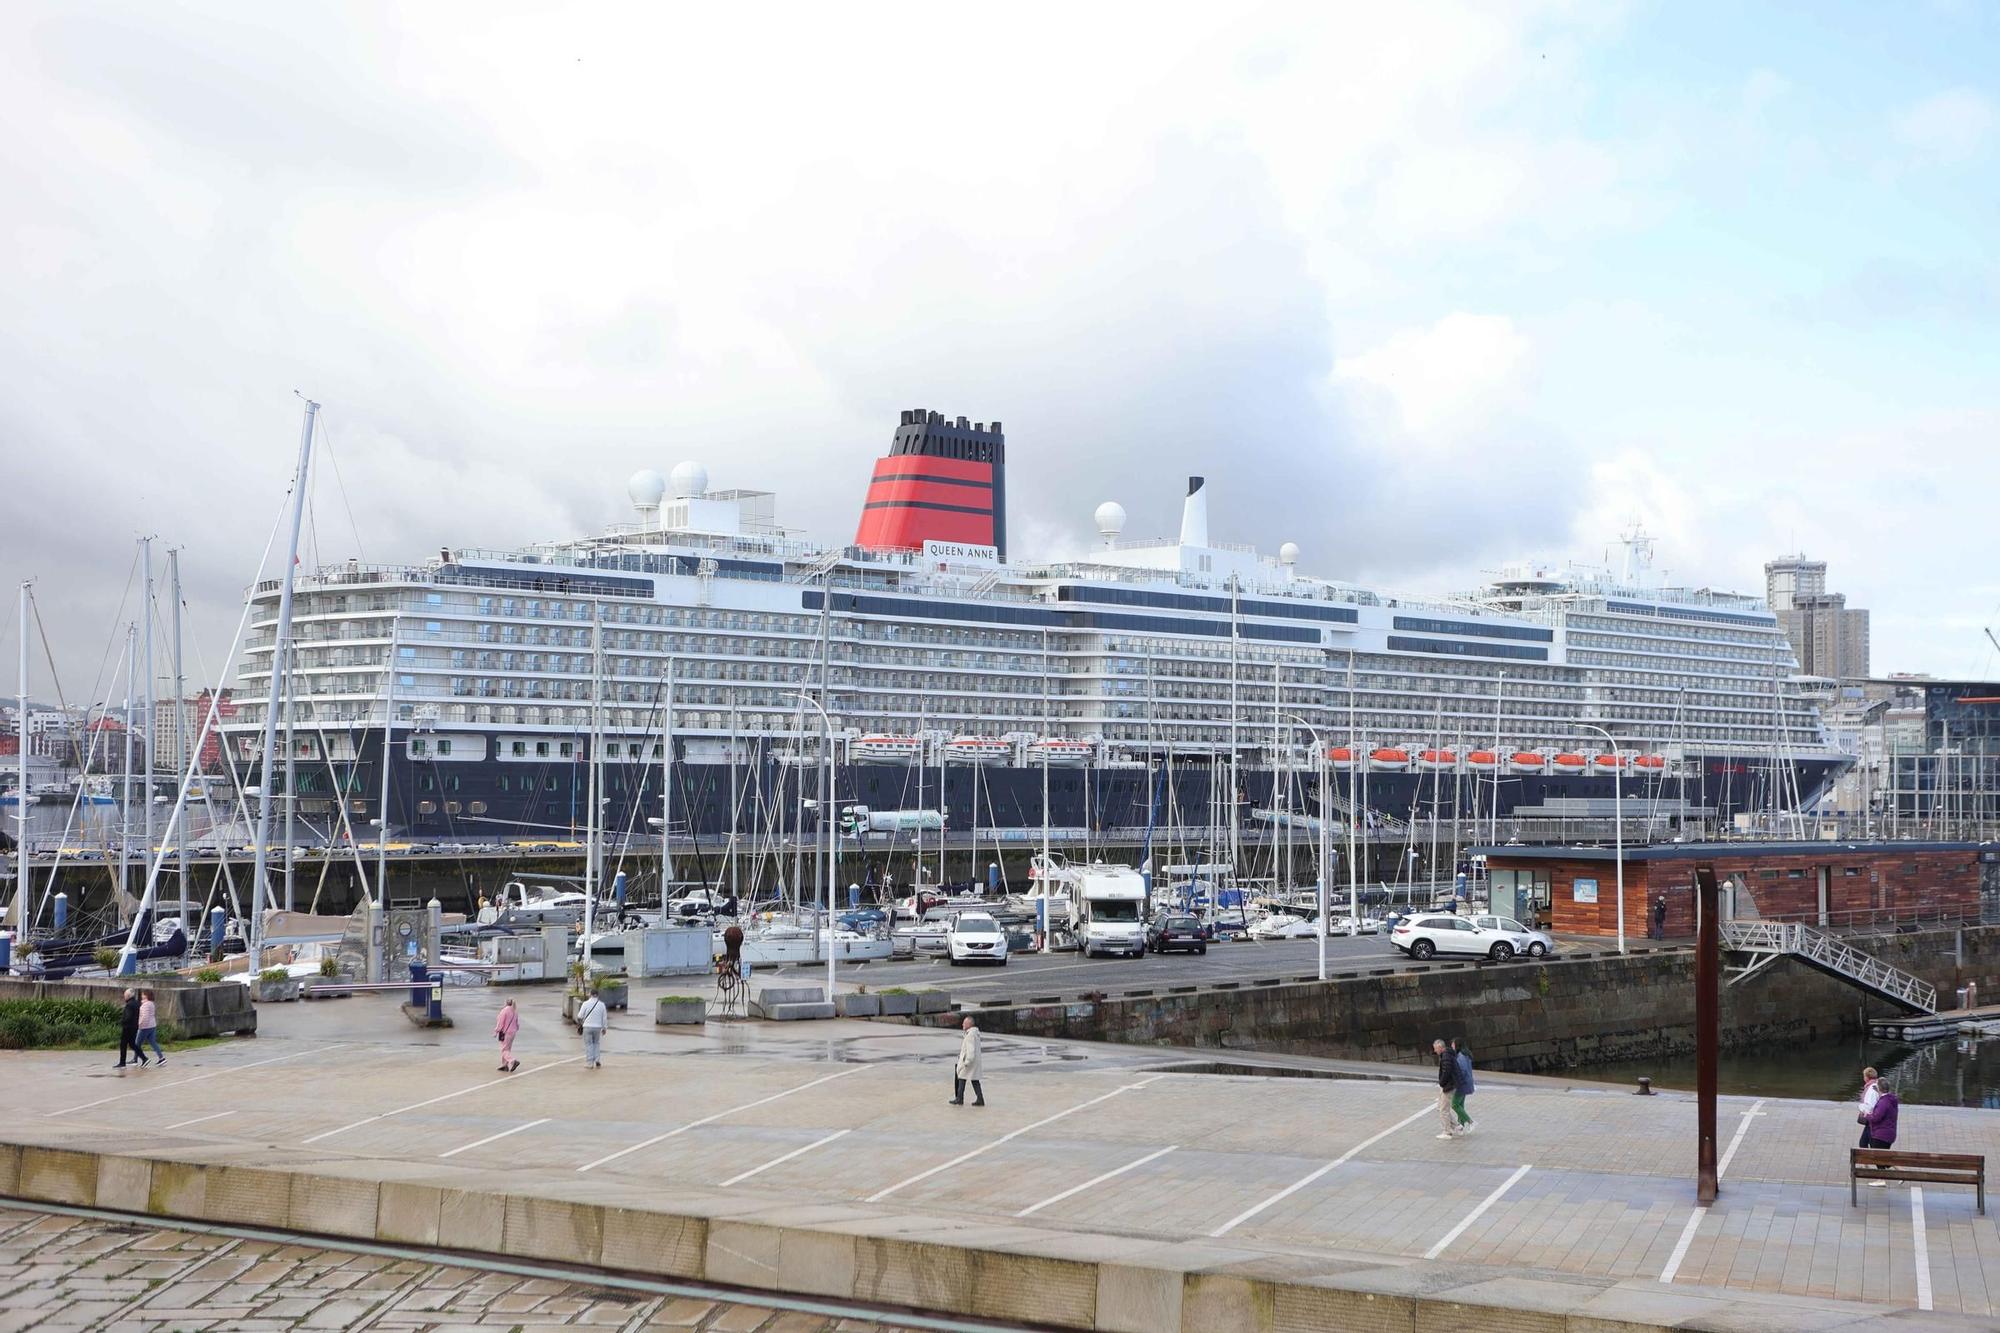 El 'Queen Anne' recala en A Coruña como primer puerto en su travesía inaugural